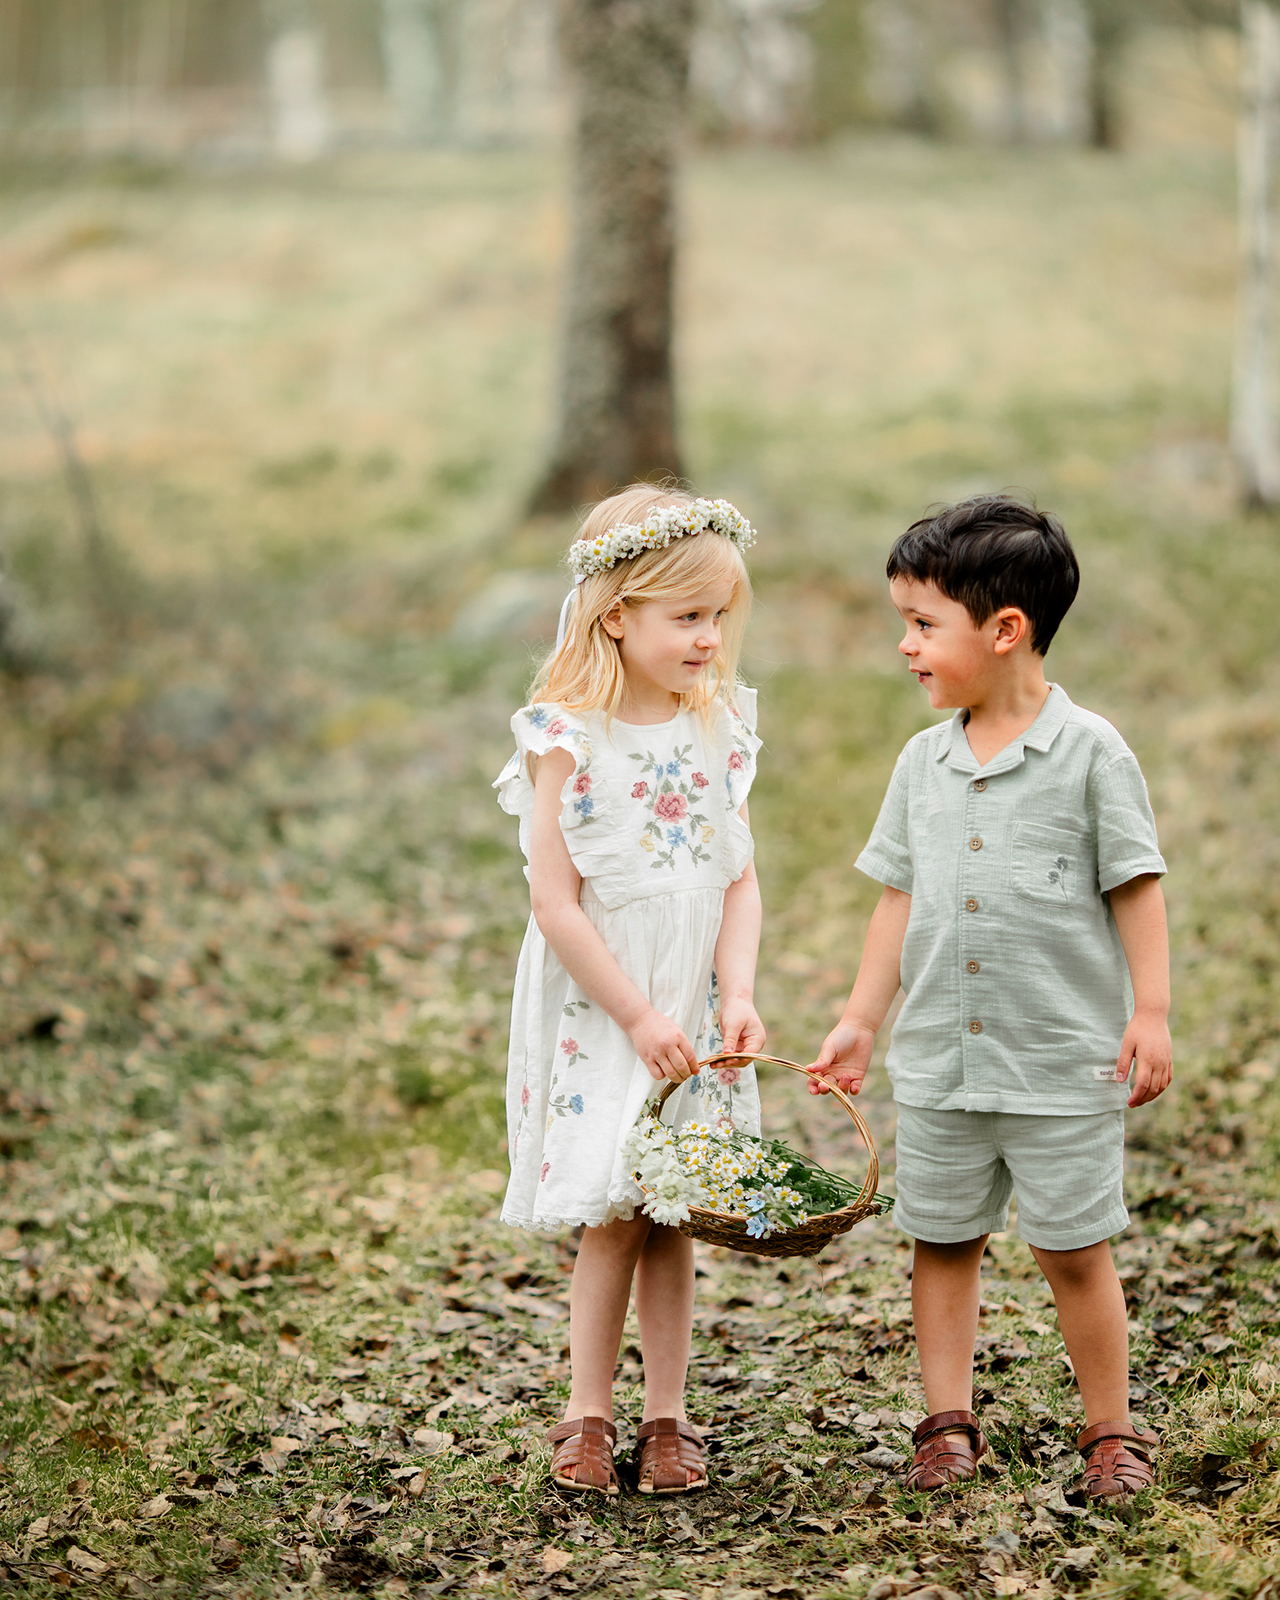 Jente og gutt på en eng i matchende klær fra Newbie Limited edition